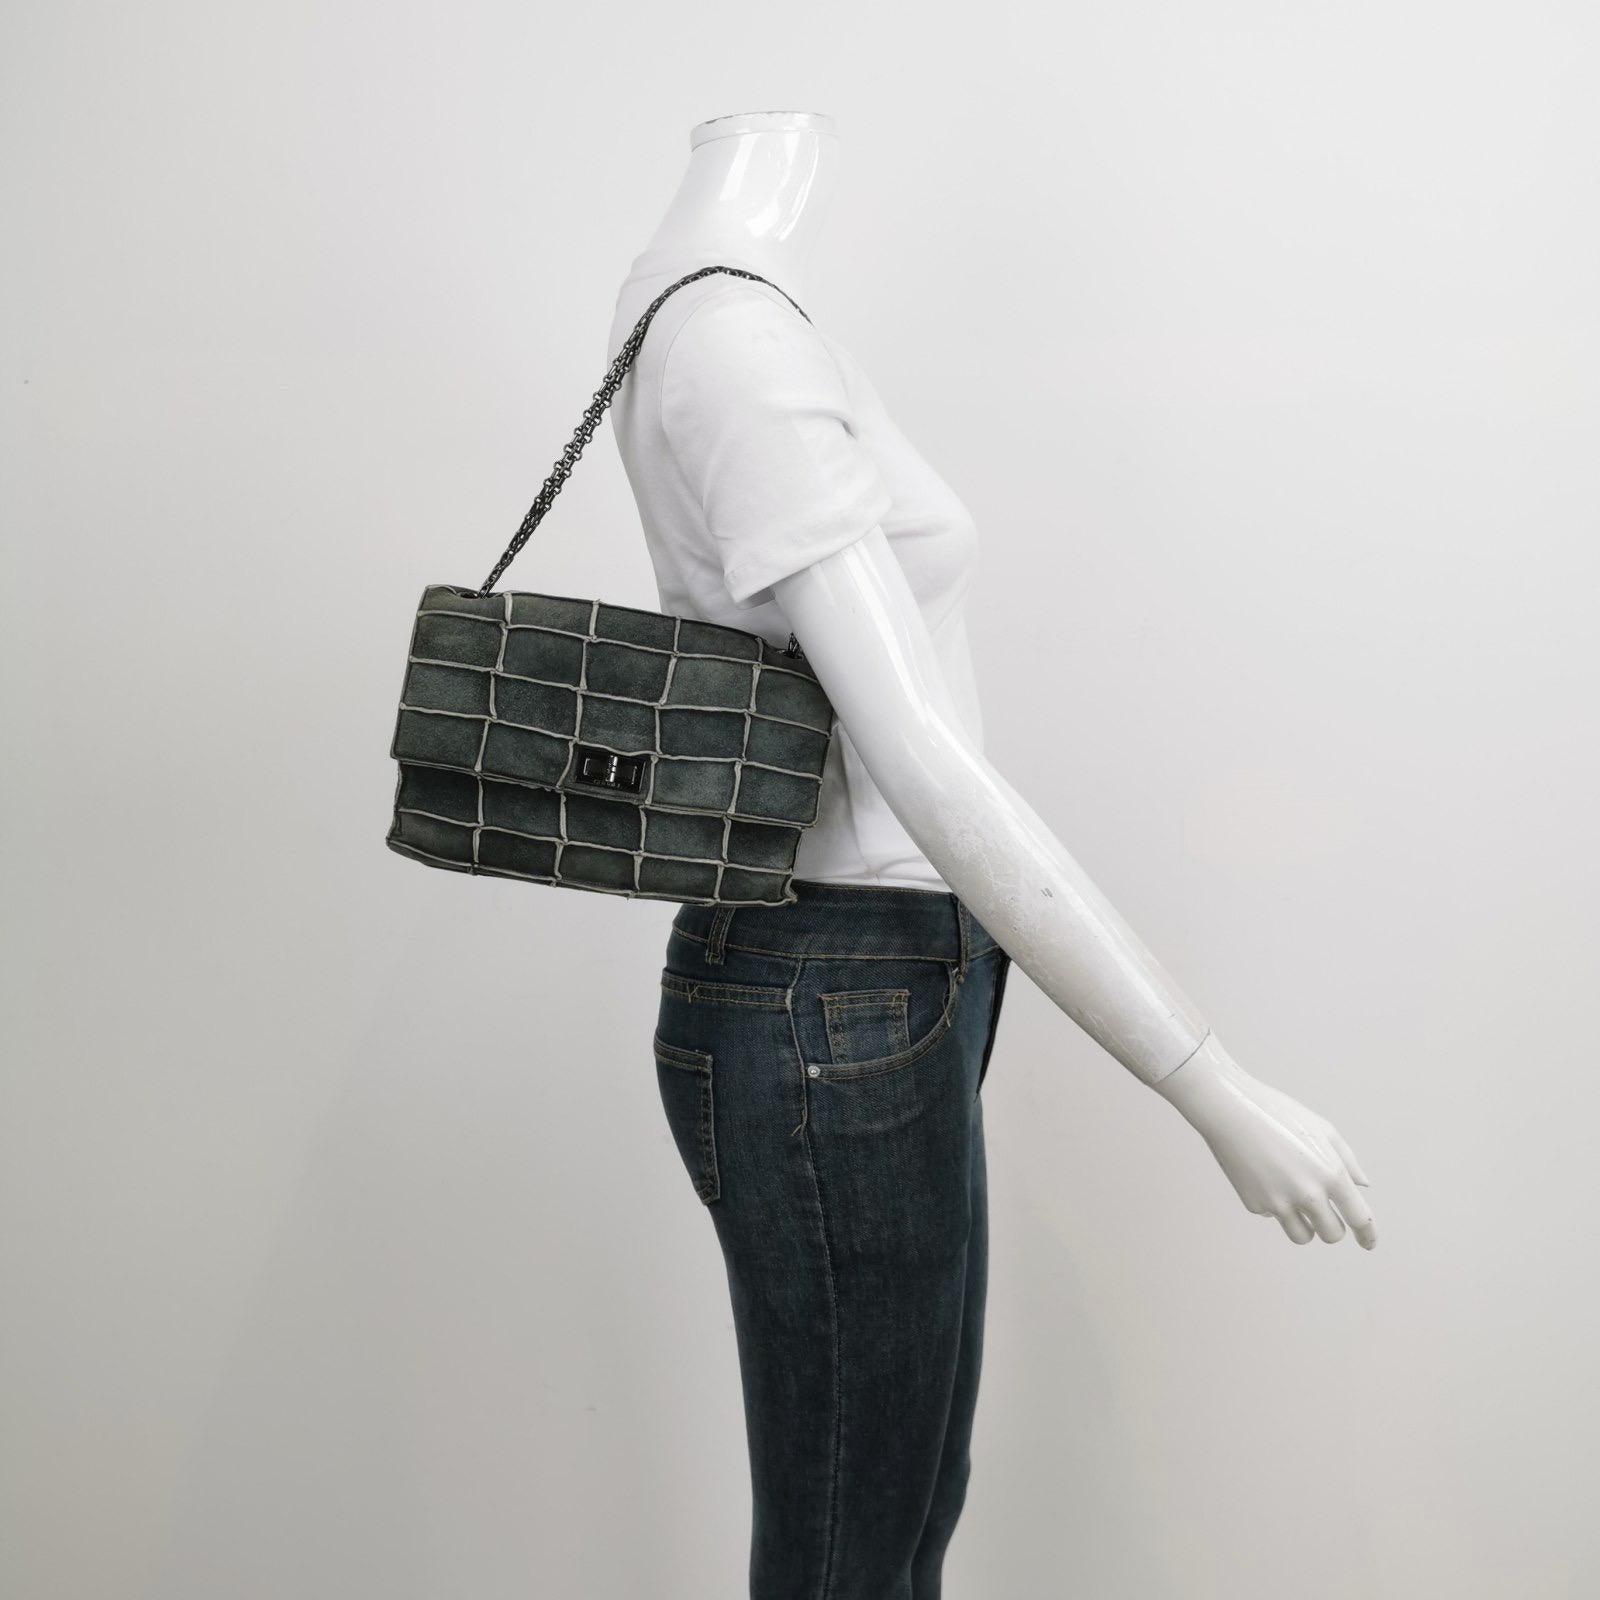 Diese Chanel 2.55 Überschlagtasche hat einen Mademoiselle-Drehverschluss und ist aus Wildleder mit quadratischer Steppnaht und silbernen Beschlägen gefertigt.

ZUSTAND: Sehr guter Zustand mit mäßigen Gebrauchsspuren. Einige Abschürfungen an den